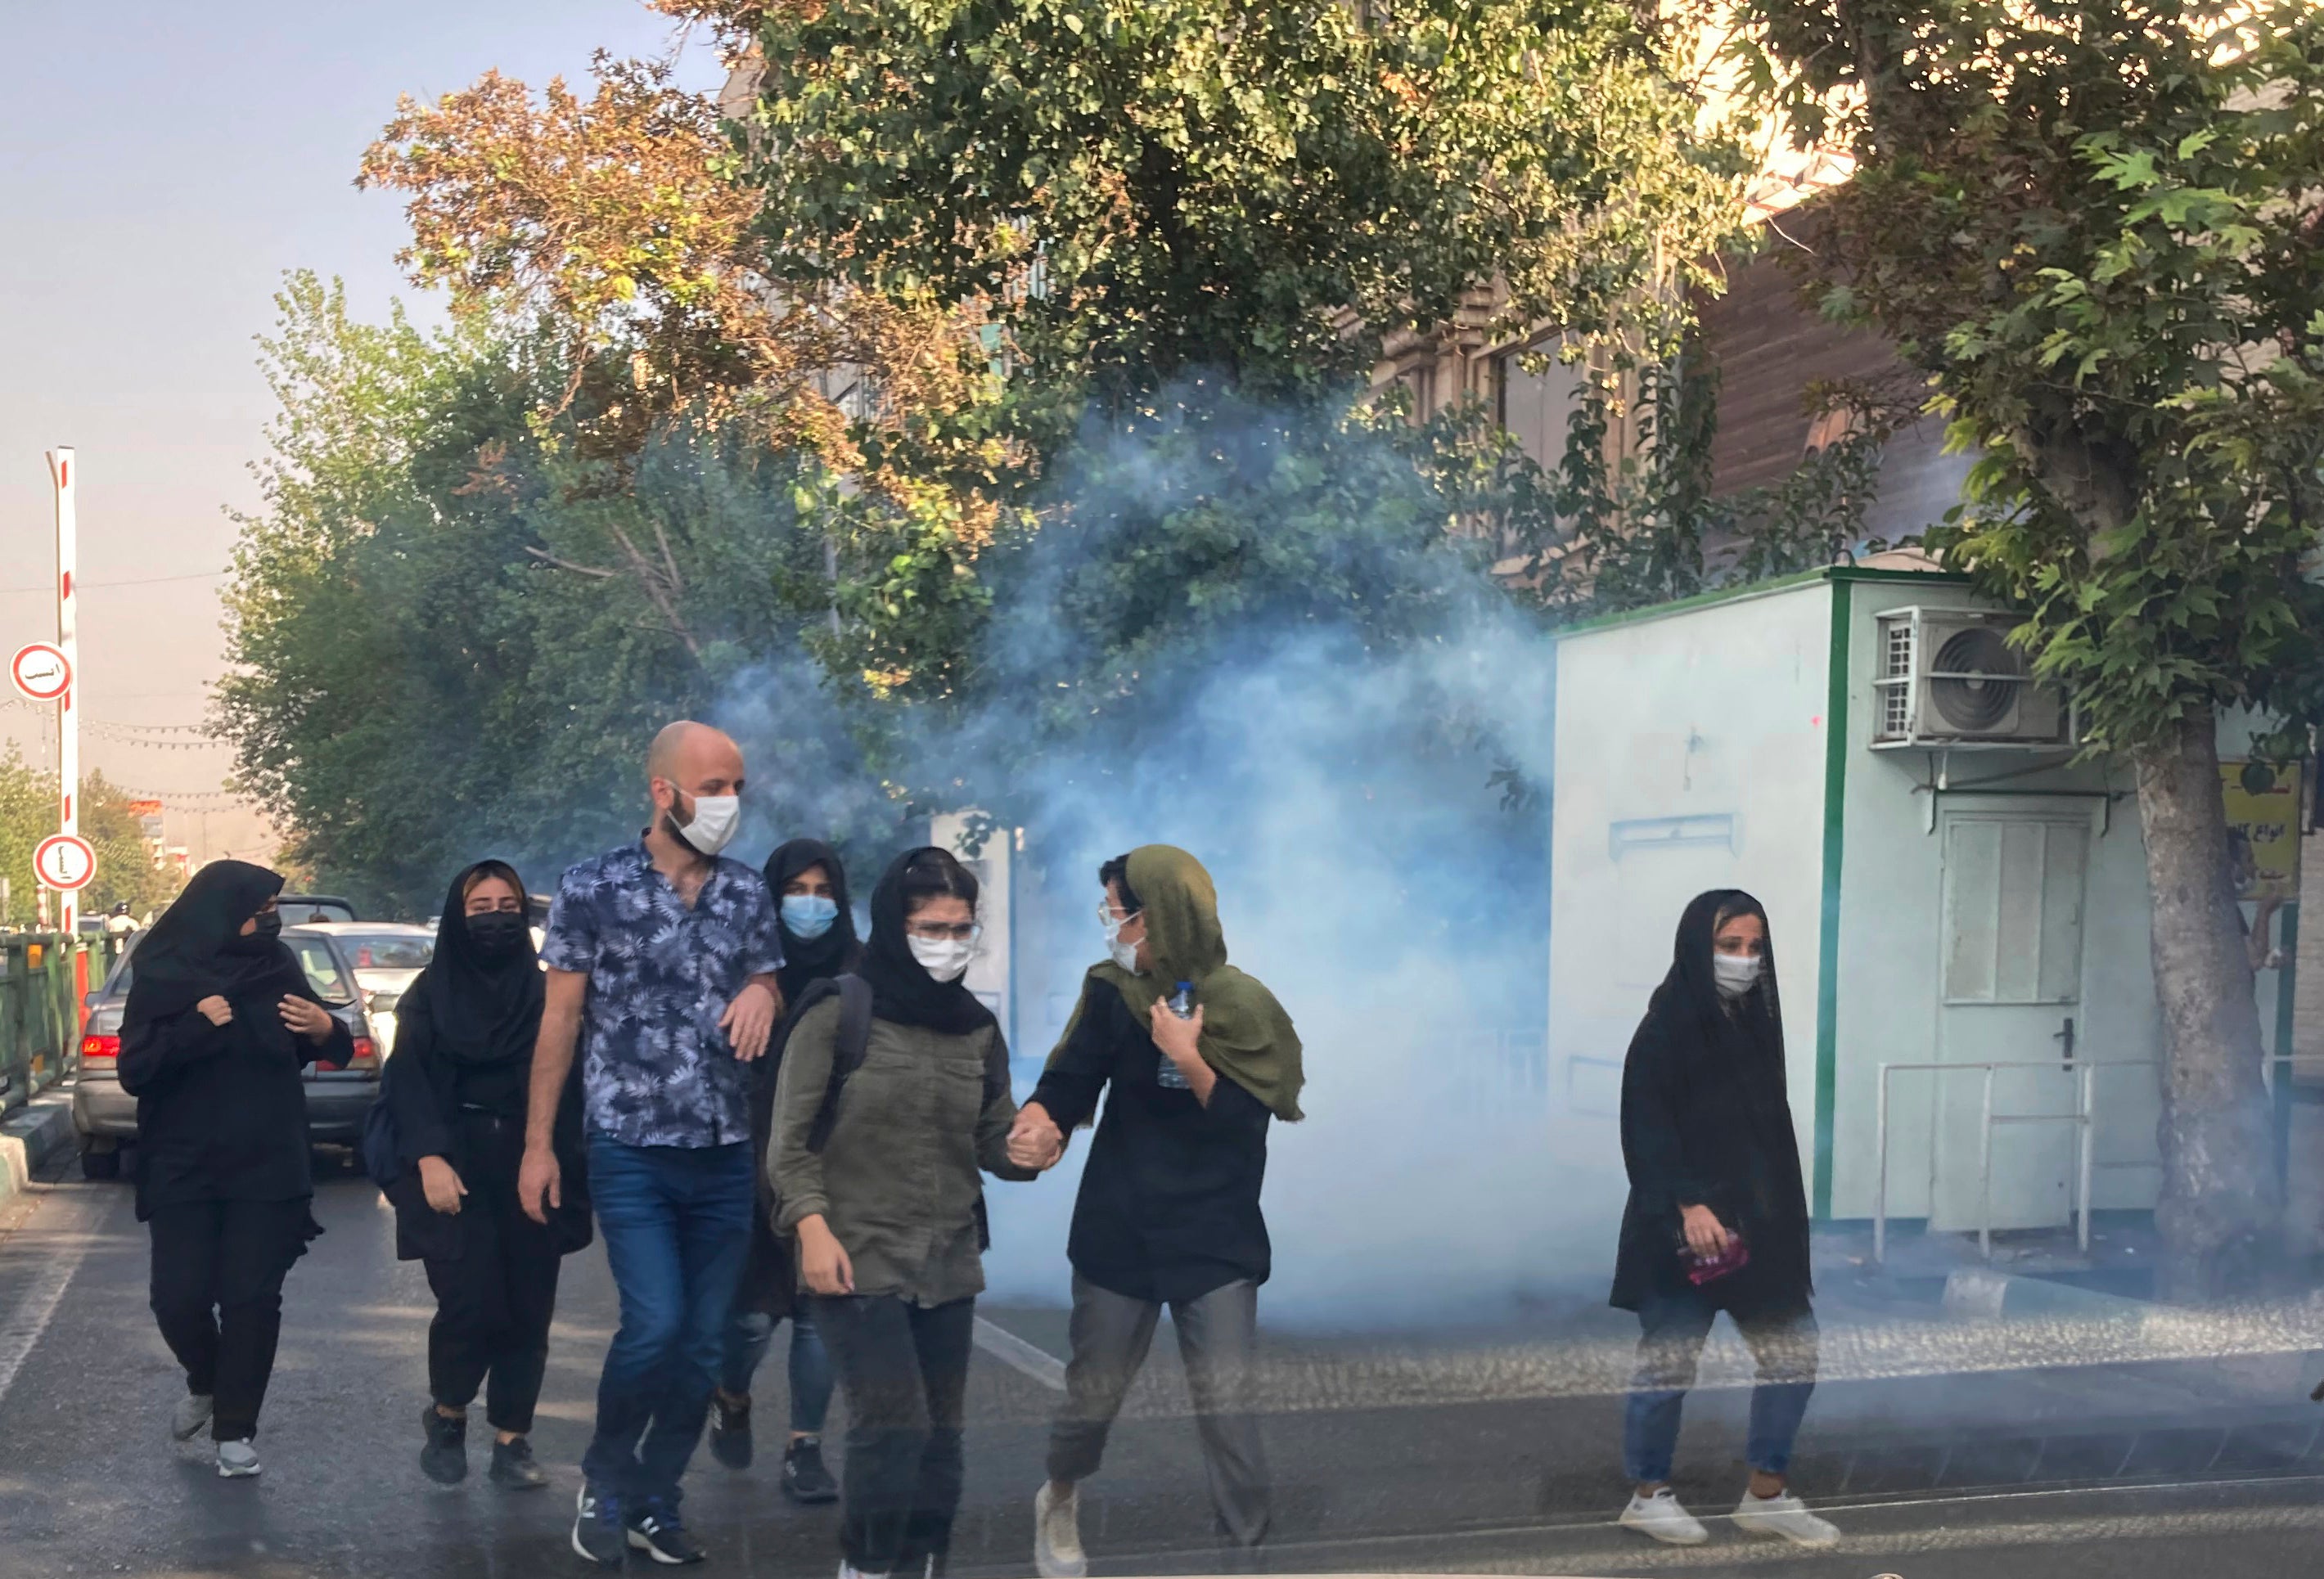 Gas lacrimógeno supuestamente utilizado para dispersar a los manifestantes frente a la Universidad de Teherán